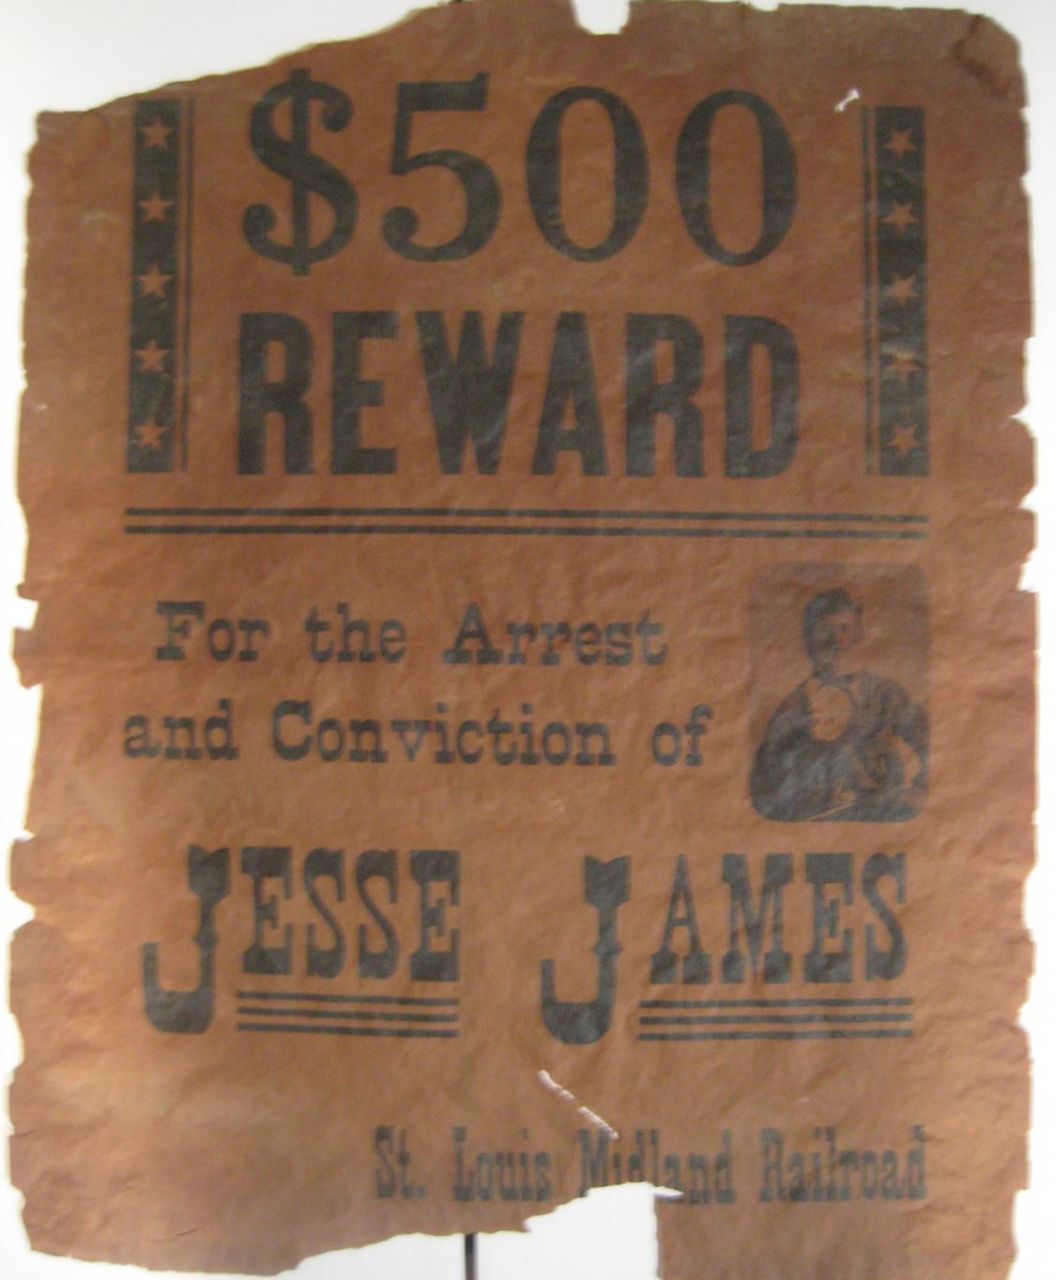 Jesse James - legenda dzikiego zachodu - historia